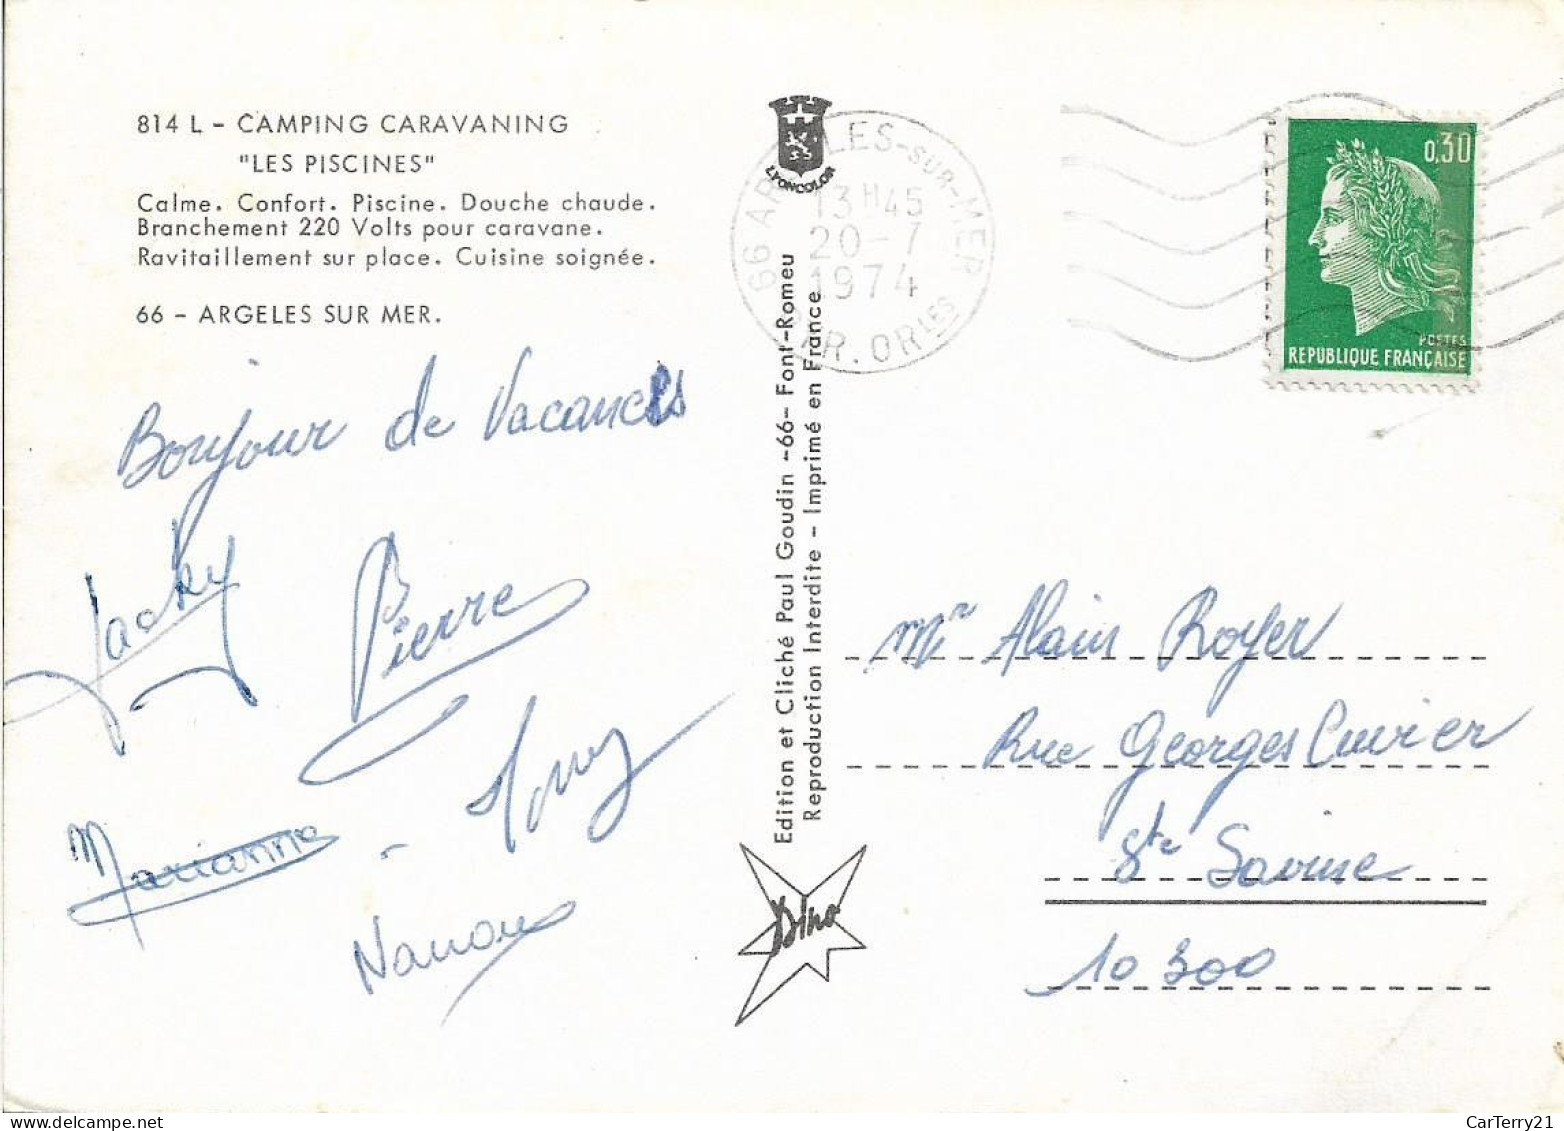 66. ARGELES SUR MER. CAMPING CARAVANING "LES PISCINES". 4 VUES. 1974. - Argeles Sur Mer